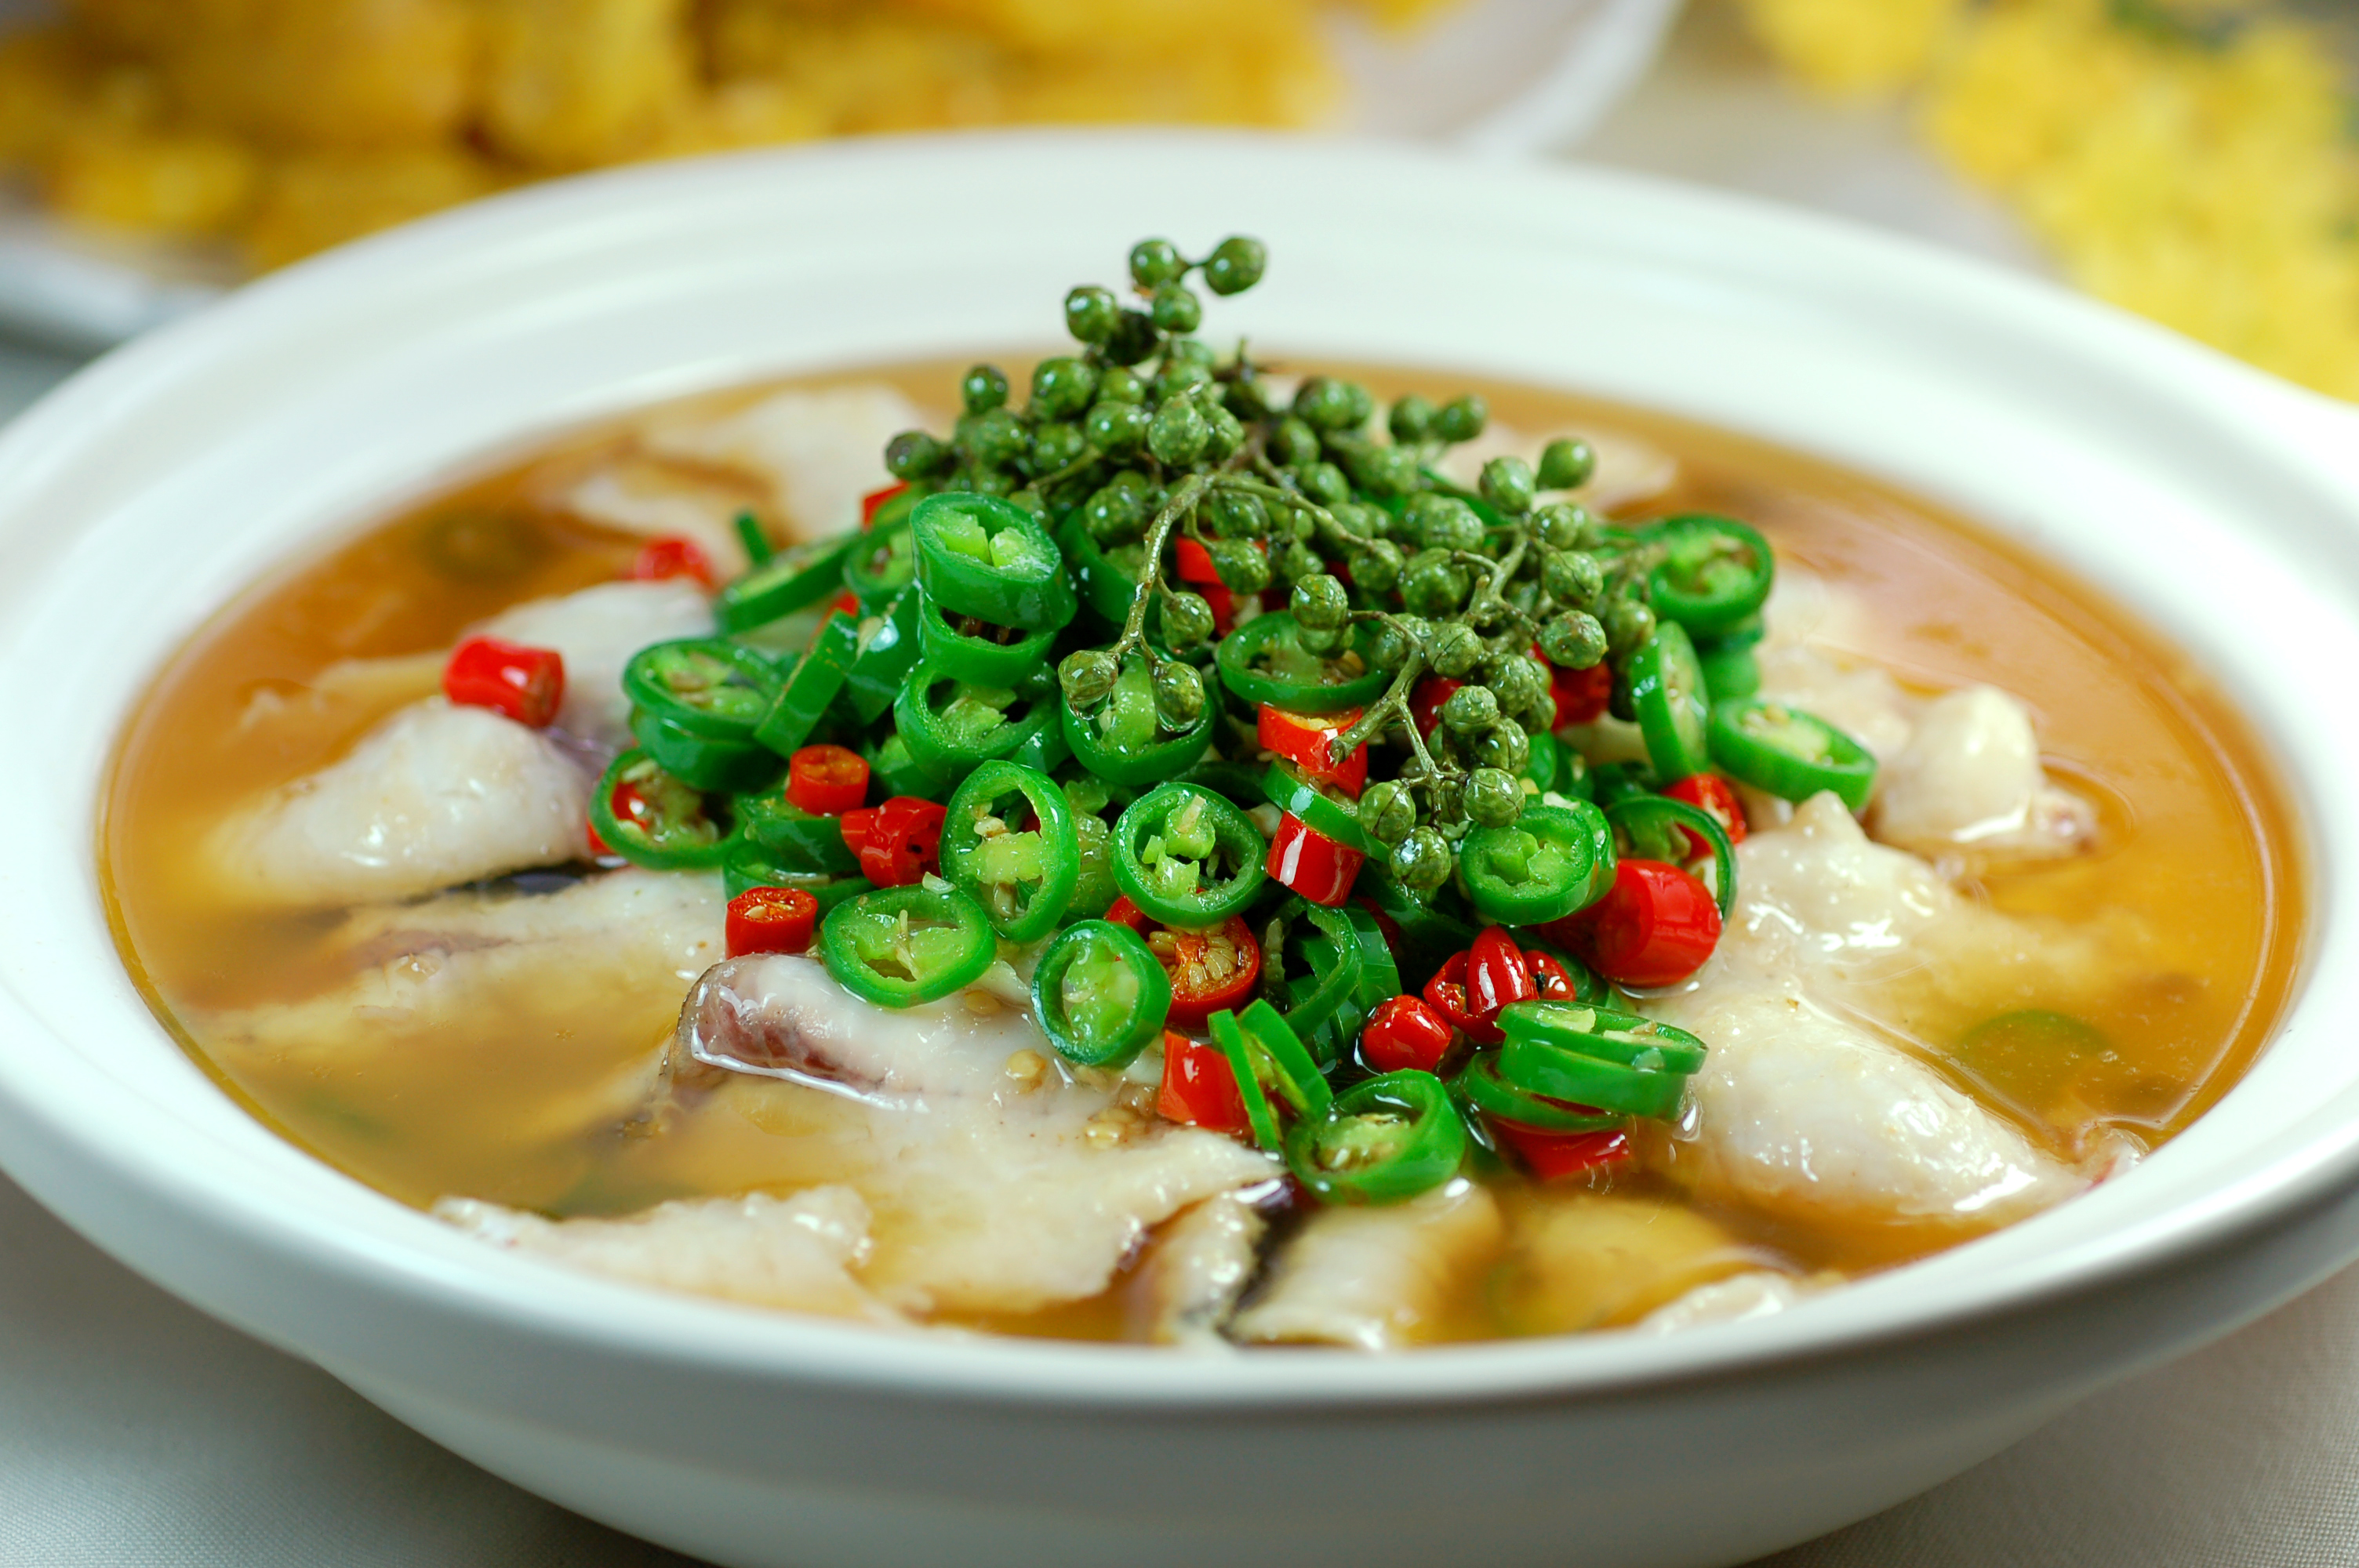 每日推荐六道美味炒菜:六道让人脍炙人口的美食,尖椒鱼